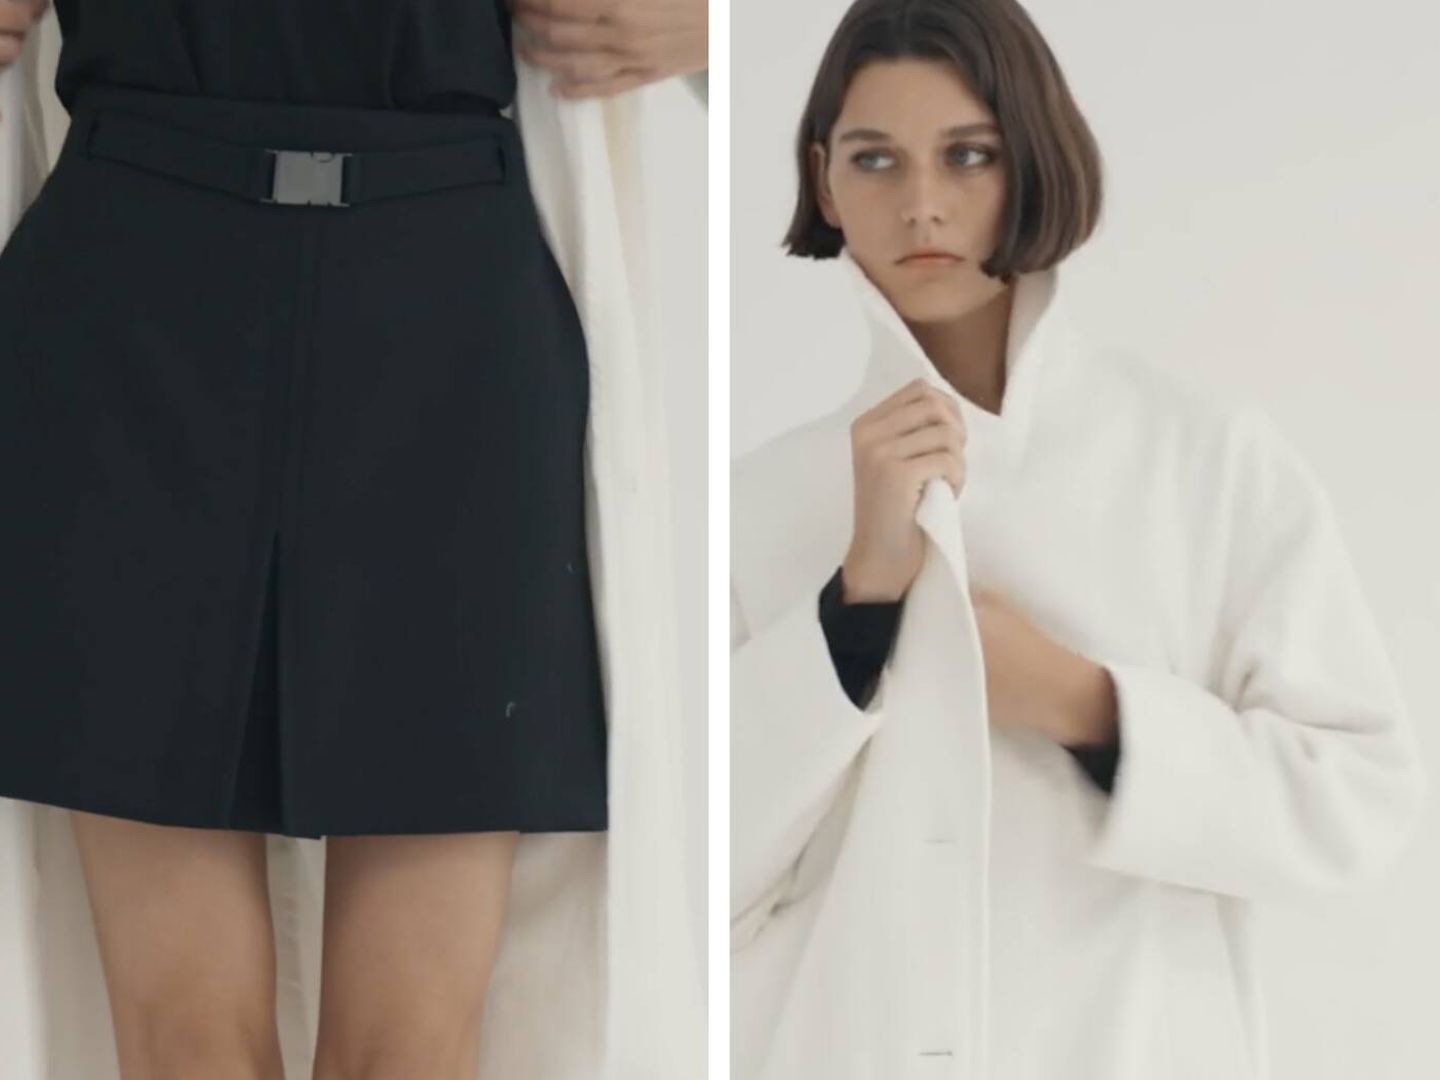 Look binomio de Massimo Dutti con abrigo blanco, minifalda, jersey y botas. (Cortesía)